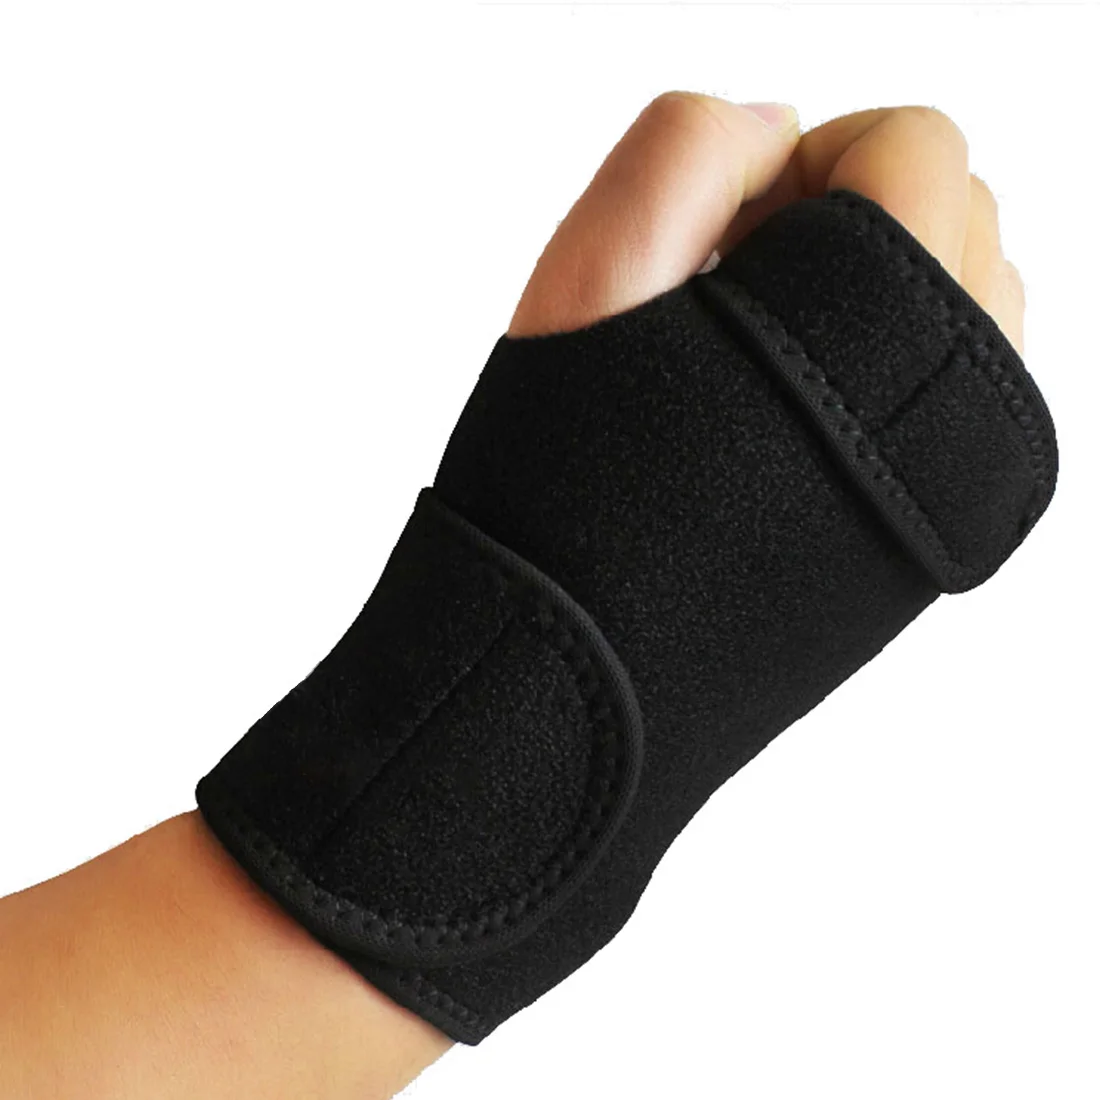 Горячая браслет бинт ортопедическая рука Скоба поддержка запястья палец шина карпальный туннель - Цвет: Right